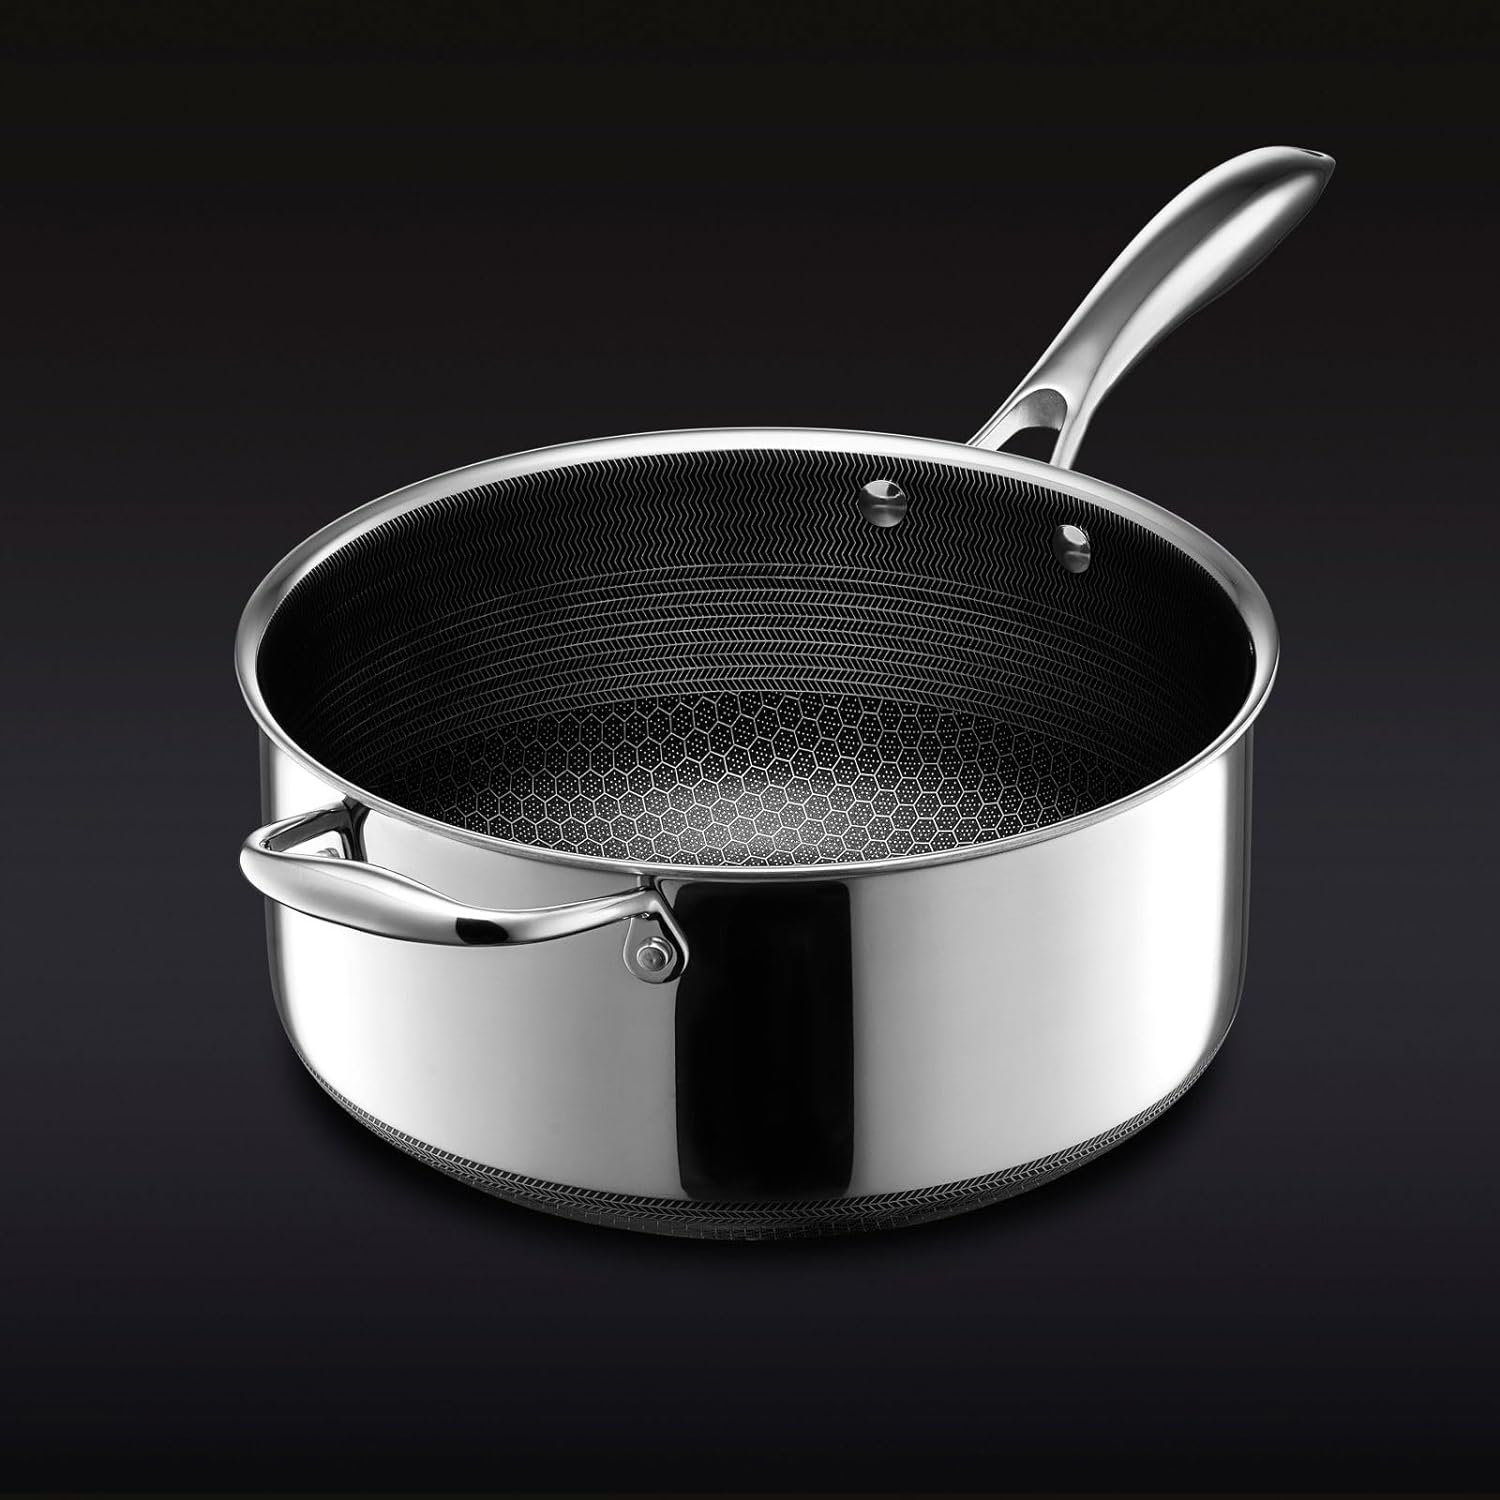  HexClad Hybrid Nonstick 14-Inch Frying Pan with Steel